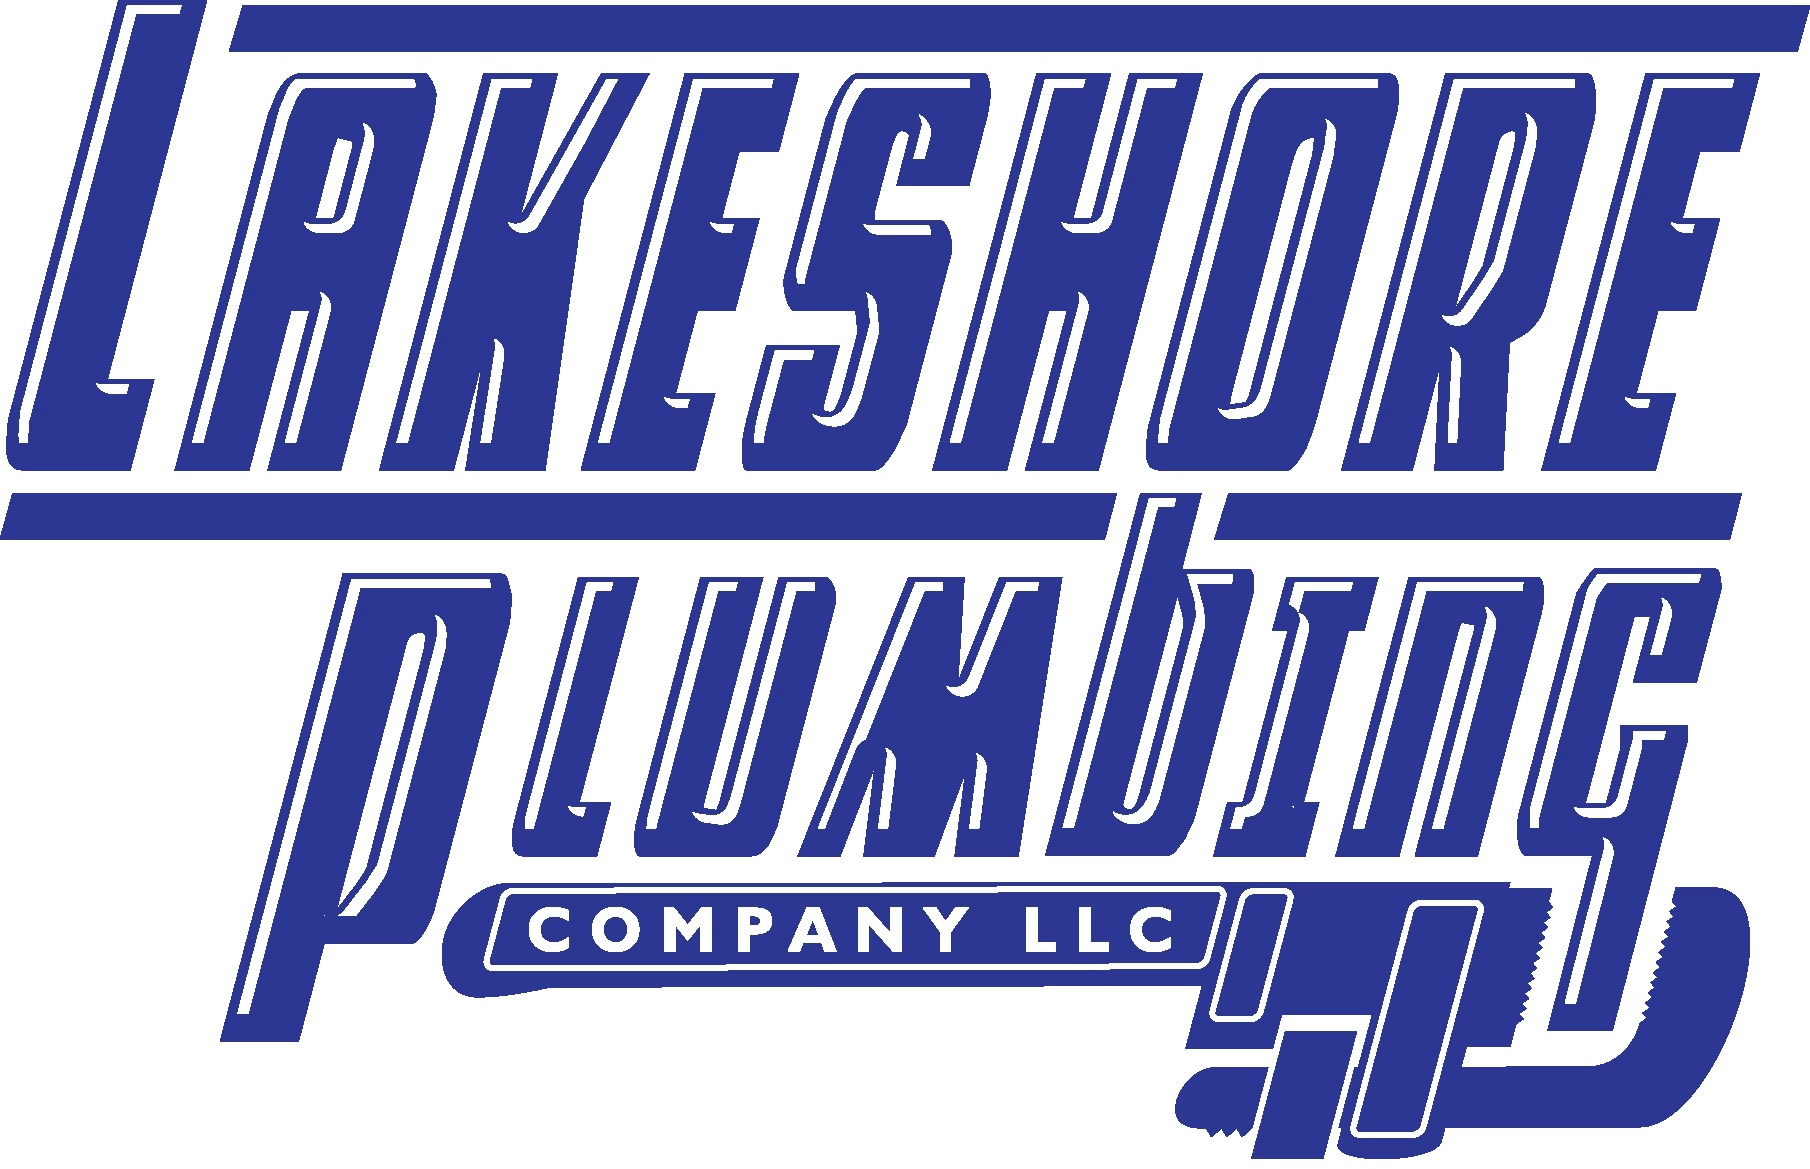 Lakeshore Plumbing Company LLC Logo